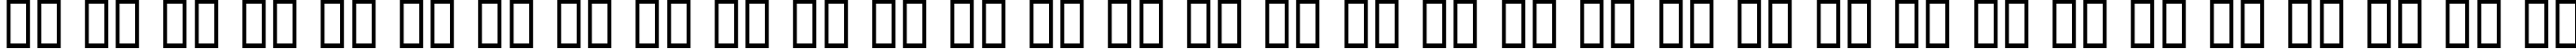 Пример написания русского алфавита шрифтом 80 Decibels